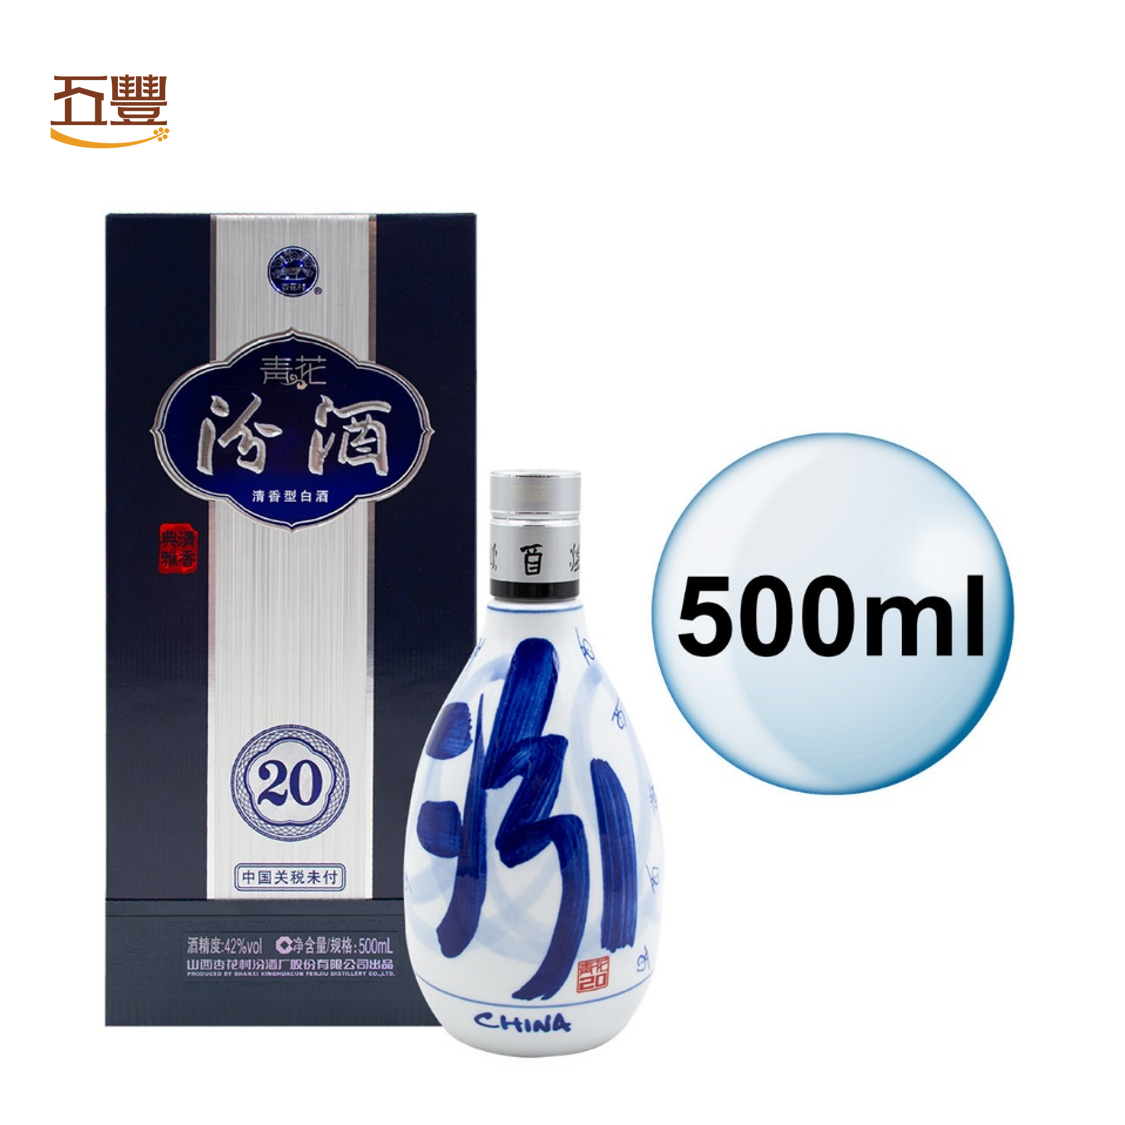 白酒 汾酒 青花20年 53度 500ml x 2本 | shop.spackdubai.com